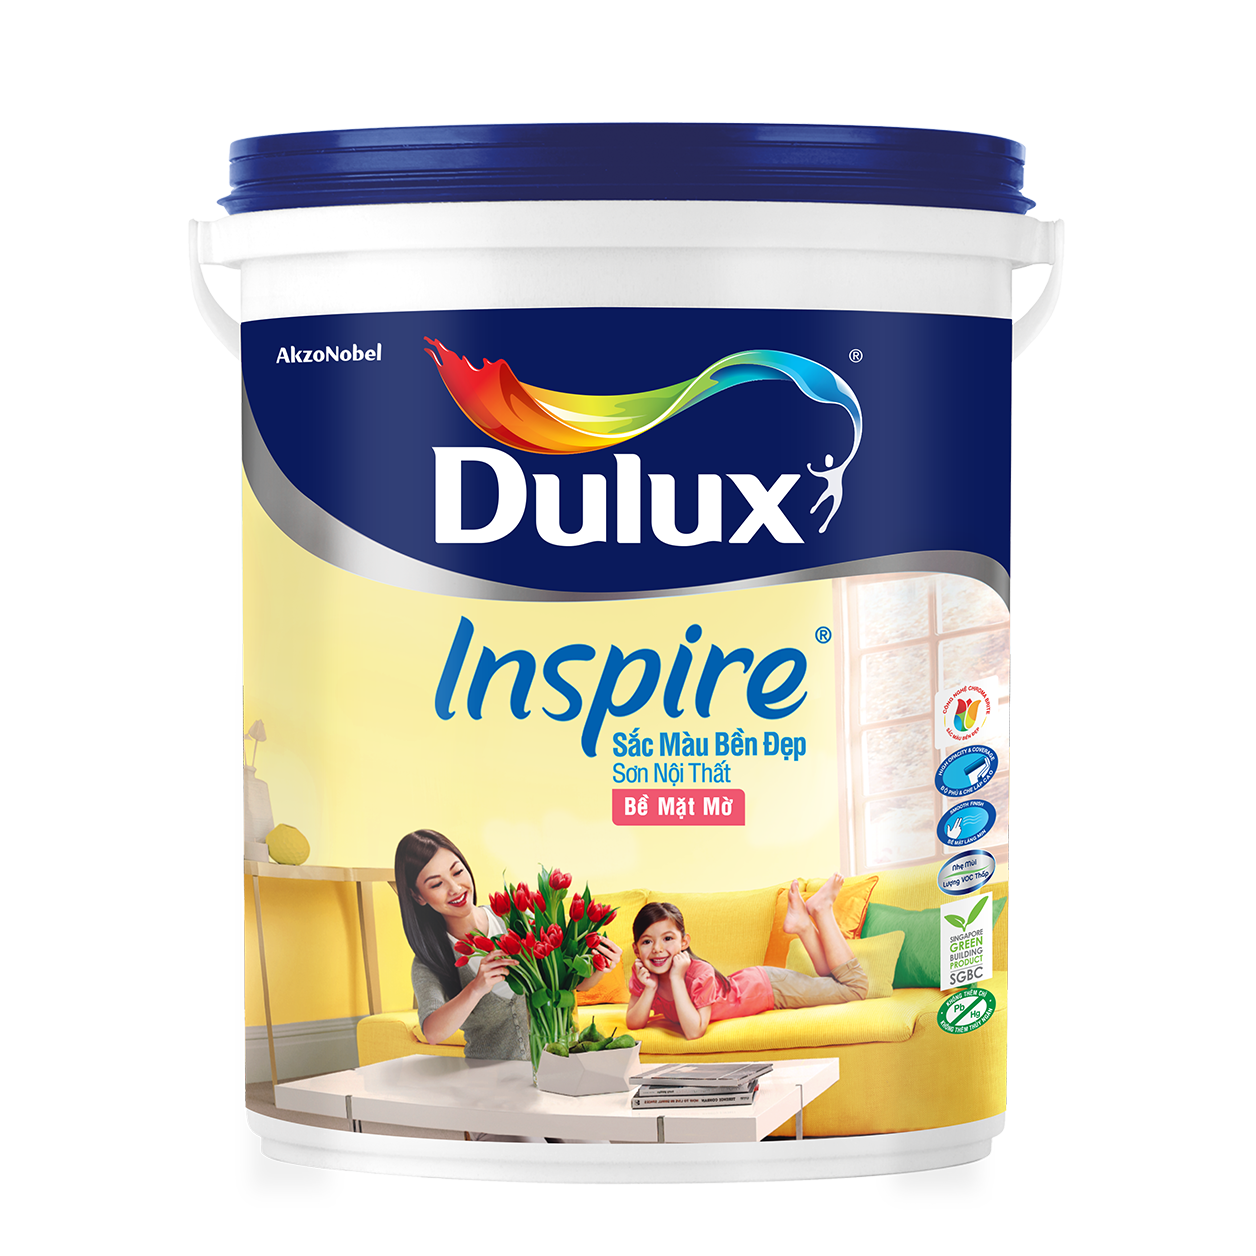 Những lý do tuyệt vời để sở hữu màu trắng 18 lít của sơn nội thất Dulux Inspire với chất lượng tuyệt vời và giá cả hợp lý. Hãy xem hình ảnh và đặt hàng ngay hôm nay.